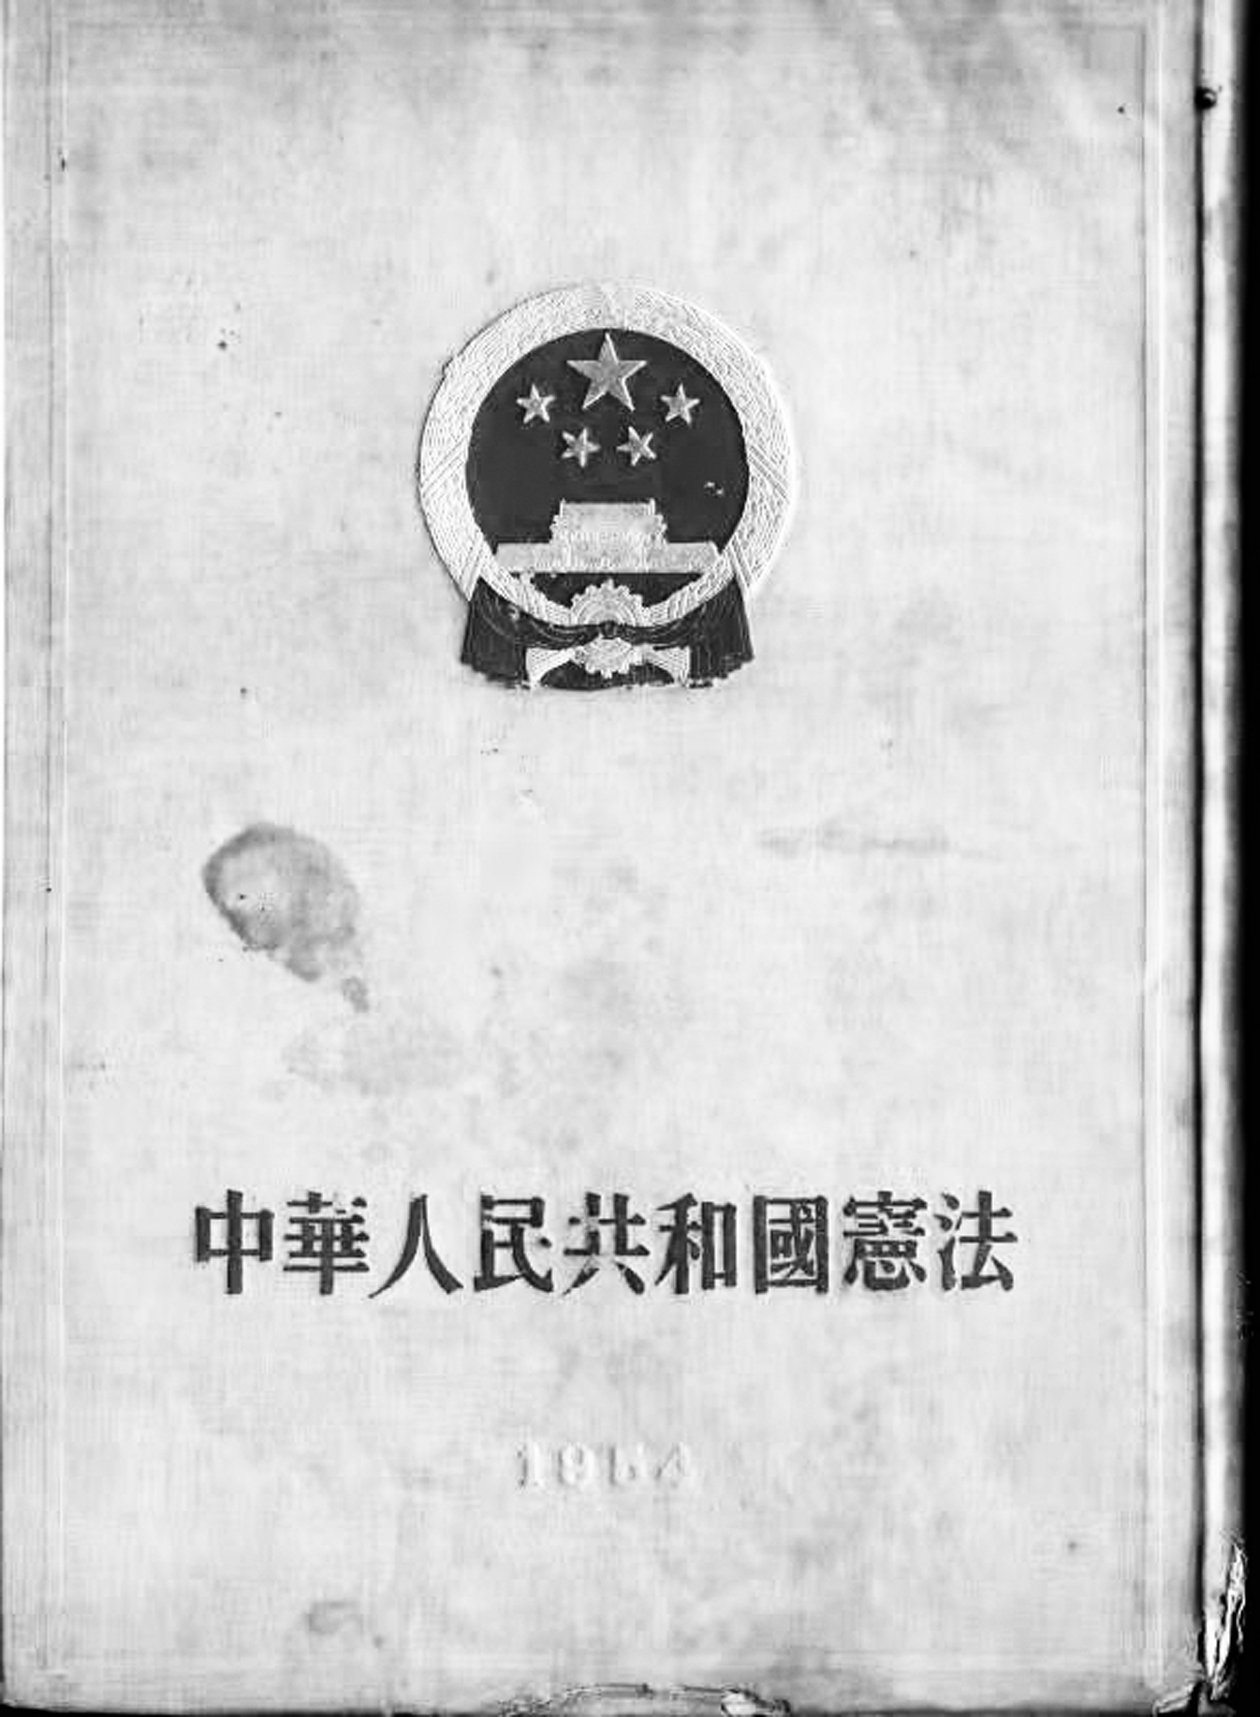 ■1954年颁布的新中国首部《宪法》